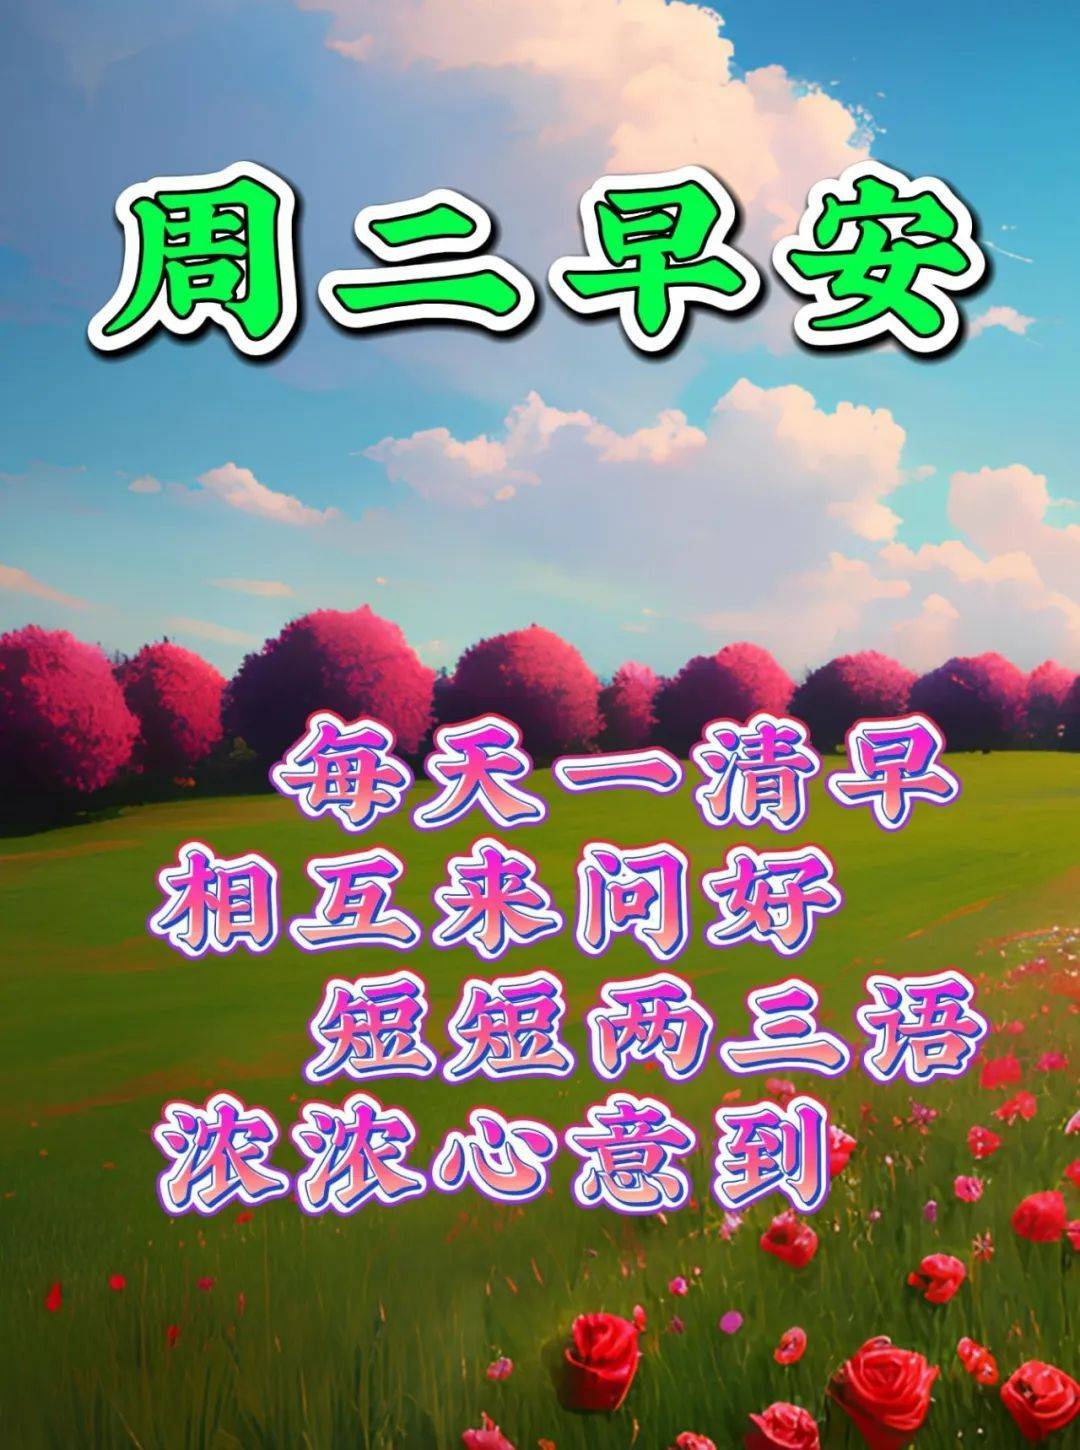 3月7日周二早上好新版精选祝福语问候语录唯美图片带字带问候语